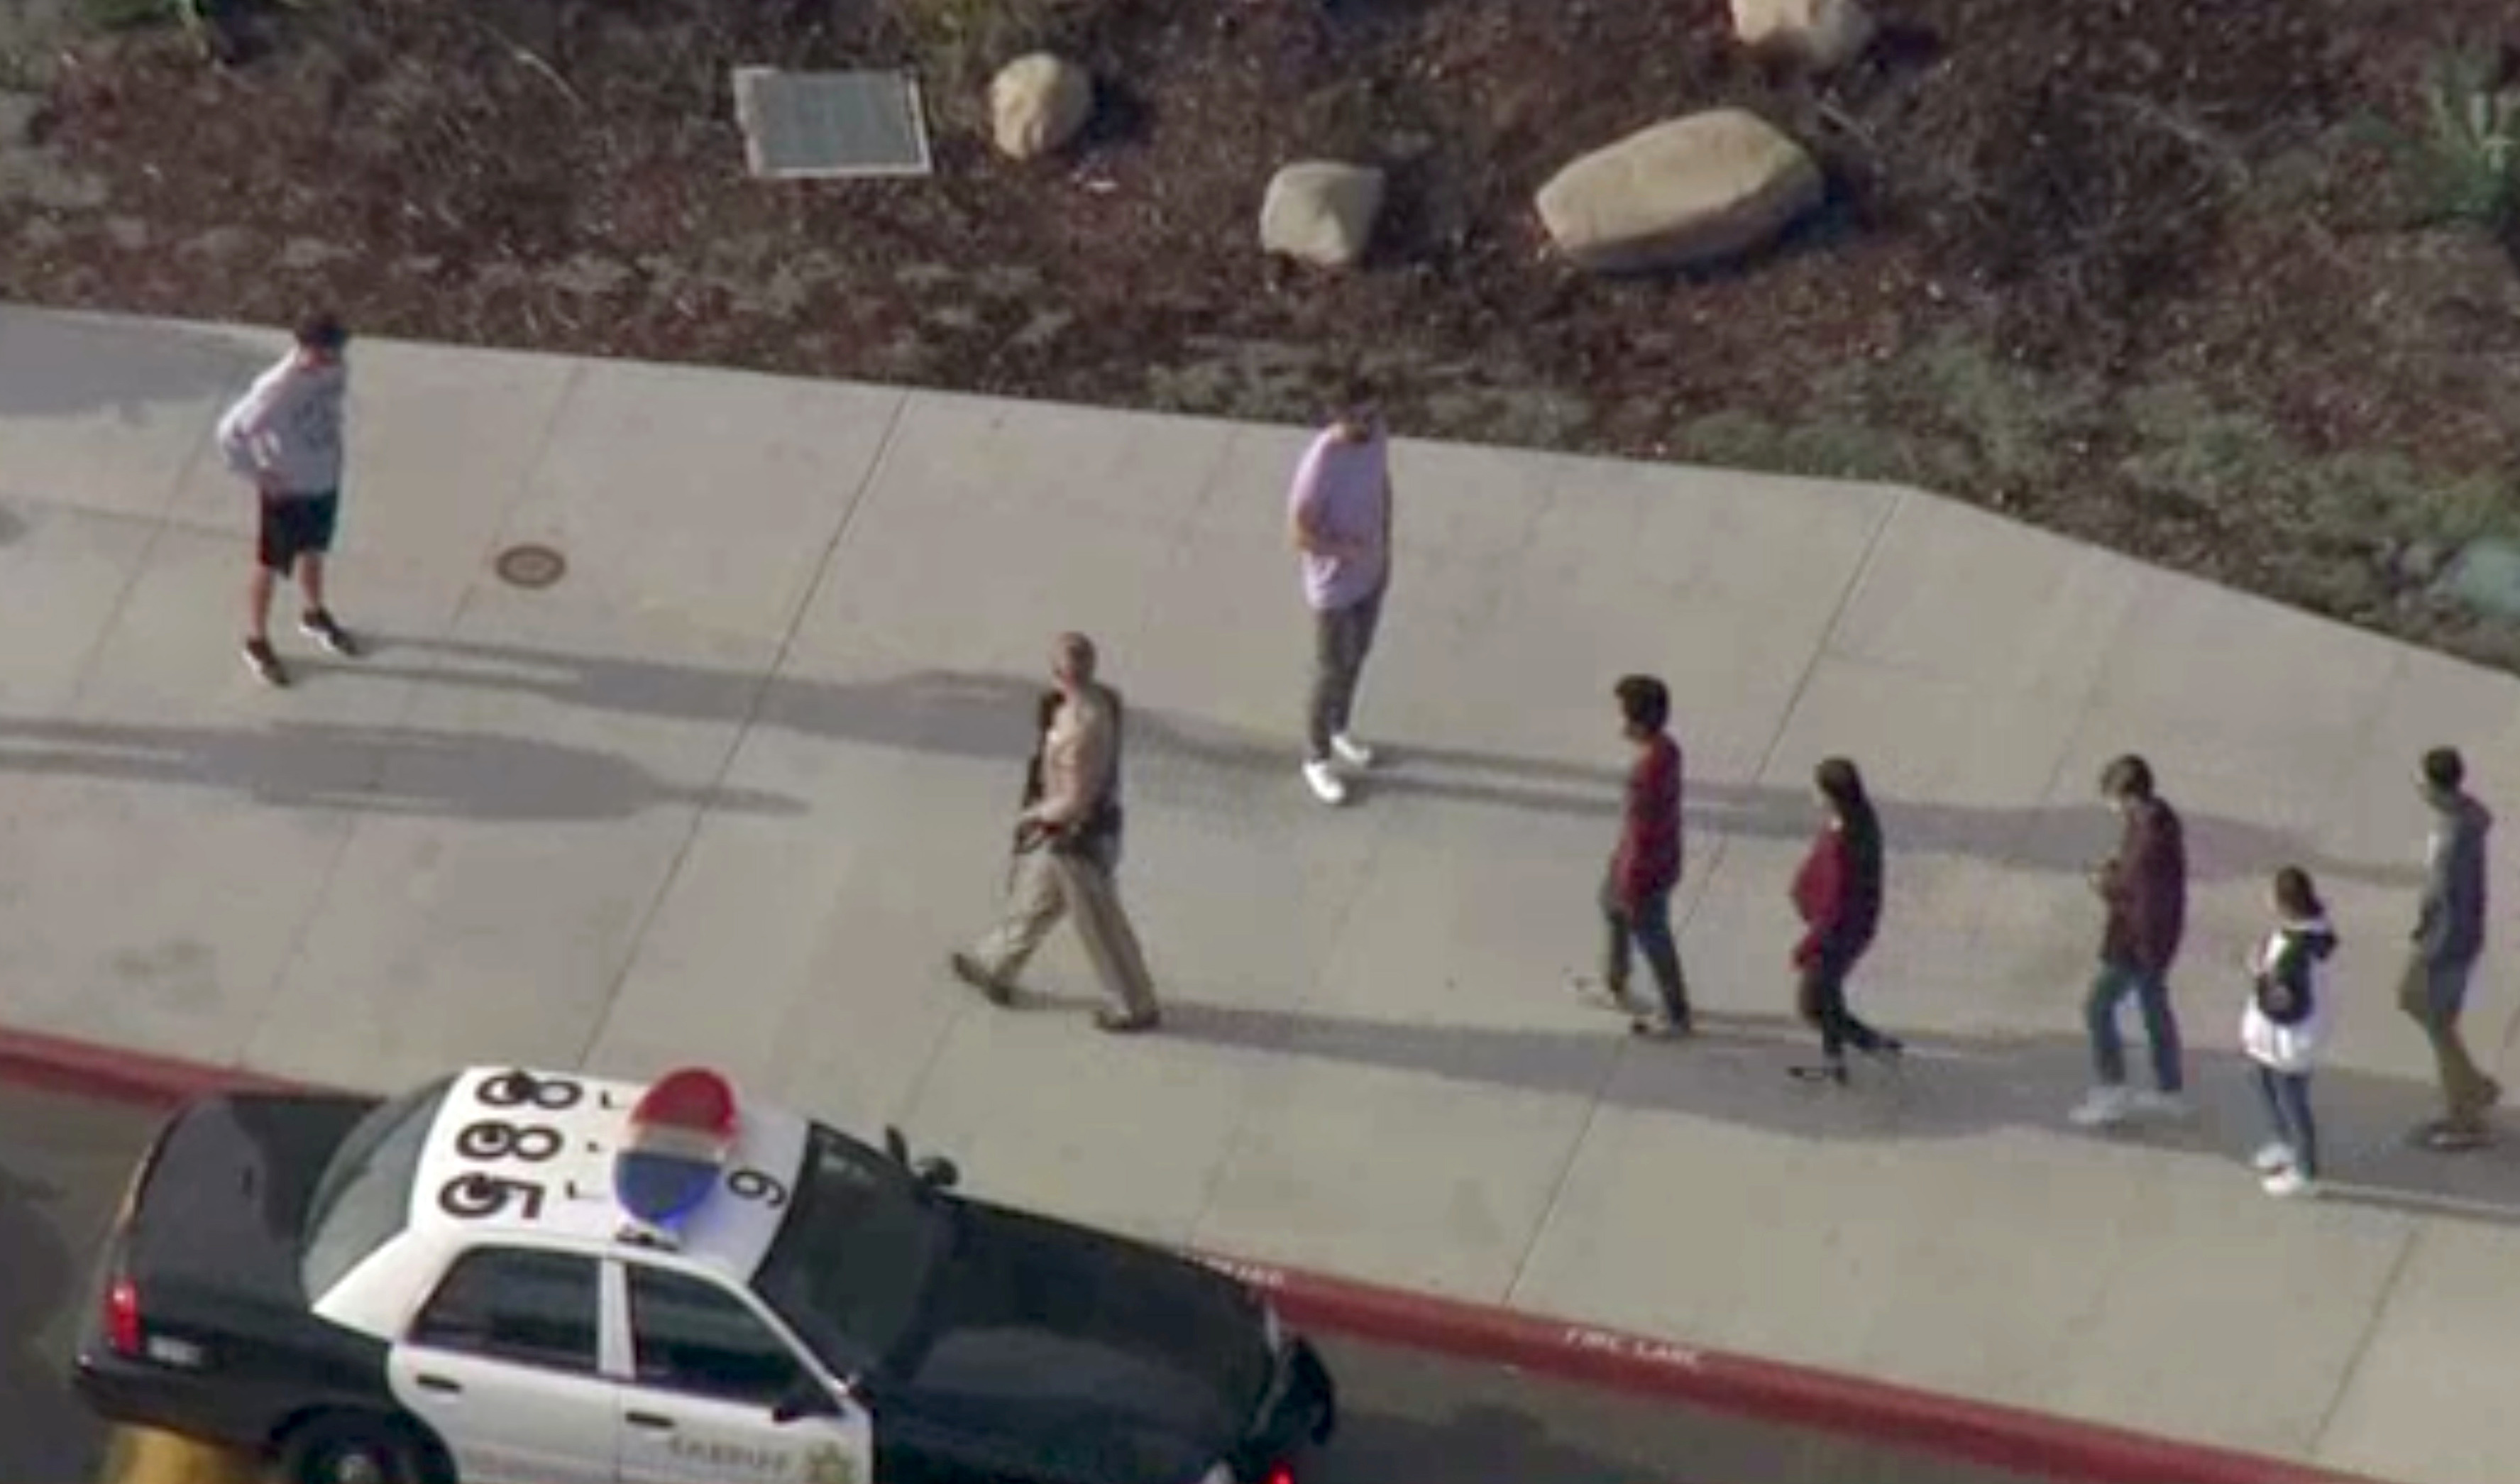 Un oficial guiando a un grupo de estudiantes de la escuela Saugus, en Santa Clarita, California, el 14 de noviembre de 2019 (NBCLA via REUTERS)